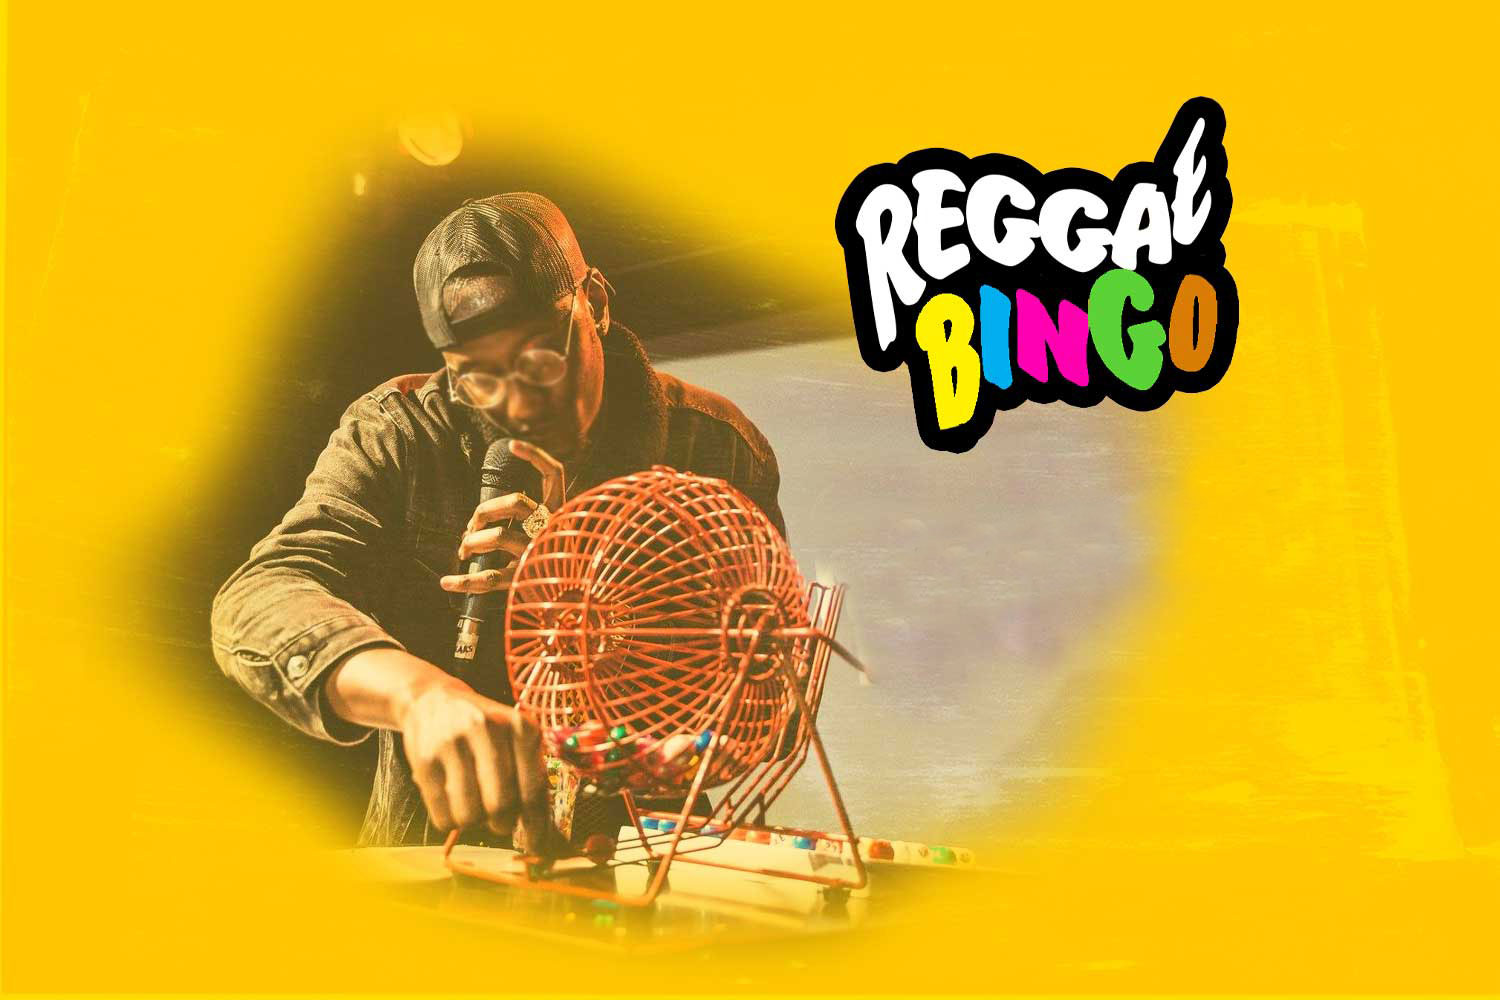 Fri 2nd Sep 2002 - Reggae Bingo